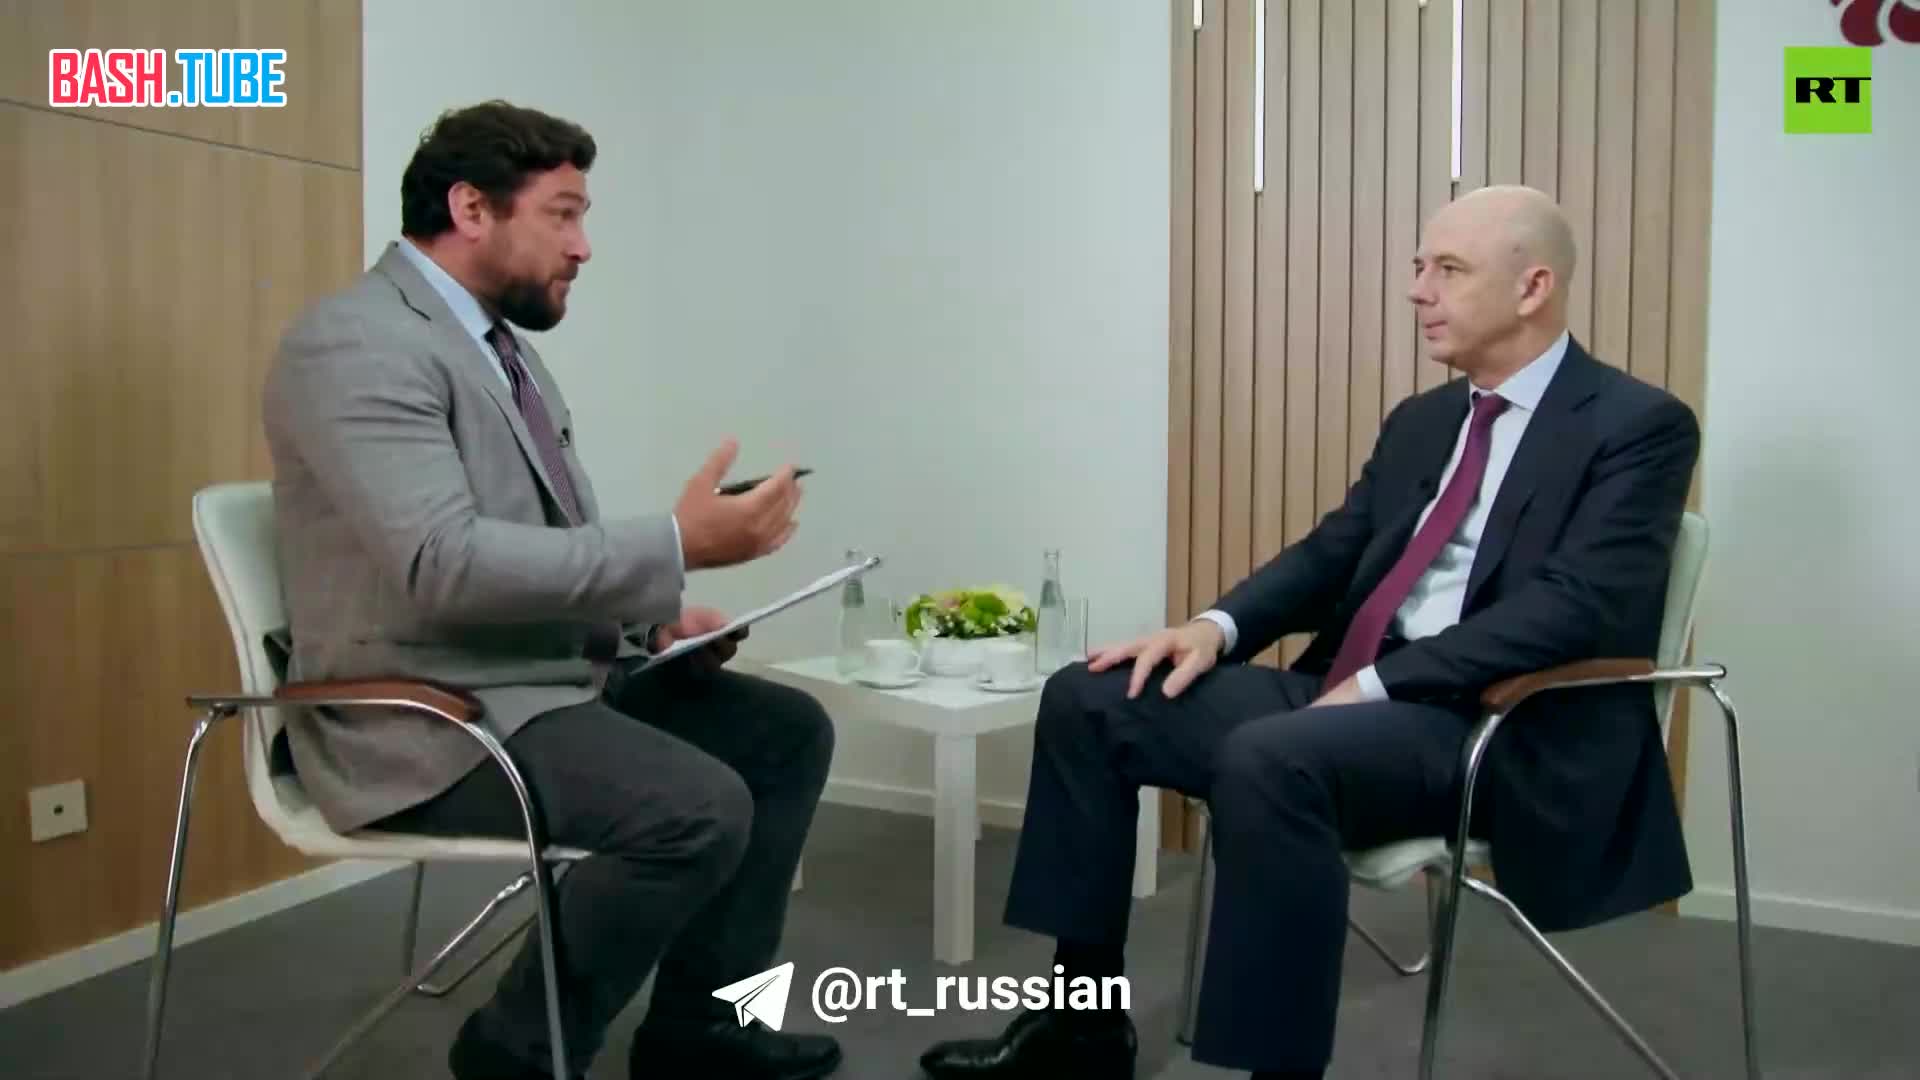  Если Запад использует замороженные российские активы, то РФ в ответ сможет поступить точно так же, заявил RT Антон Силуанов